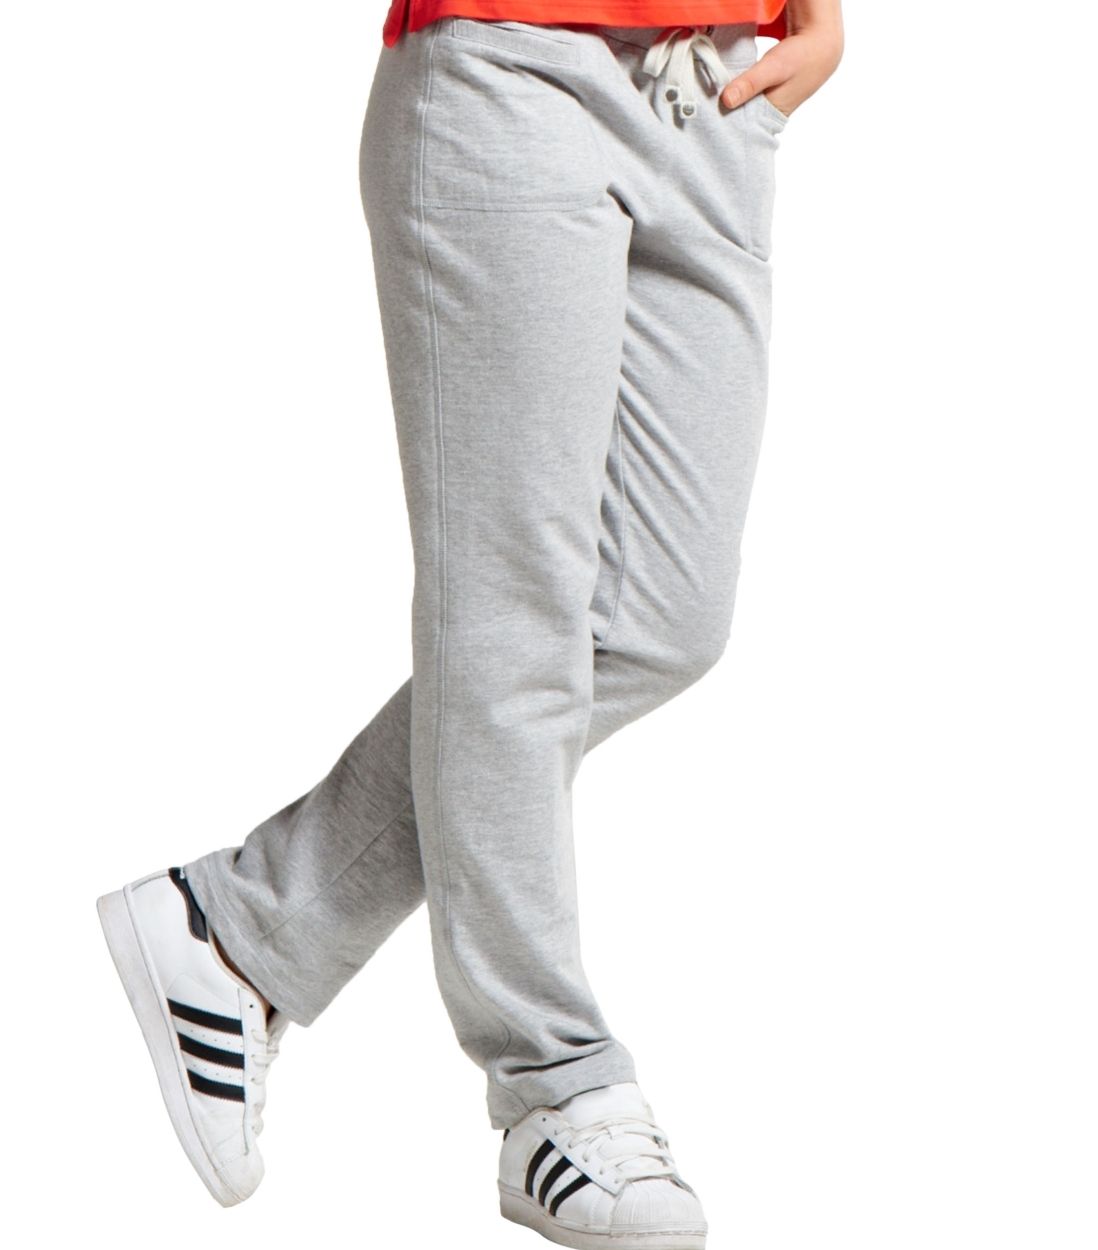 Jockey Light Grey Melange Slim Fit Long Pant Style Number-UL07: Buy ...